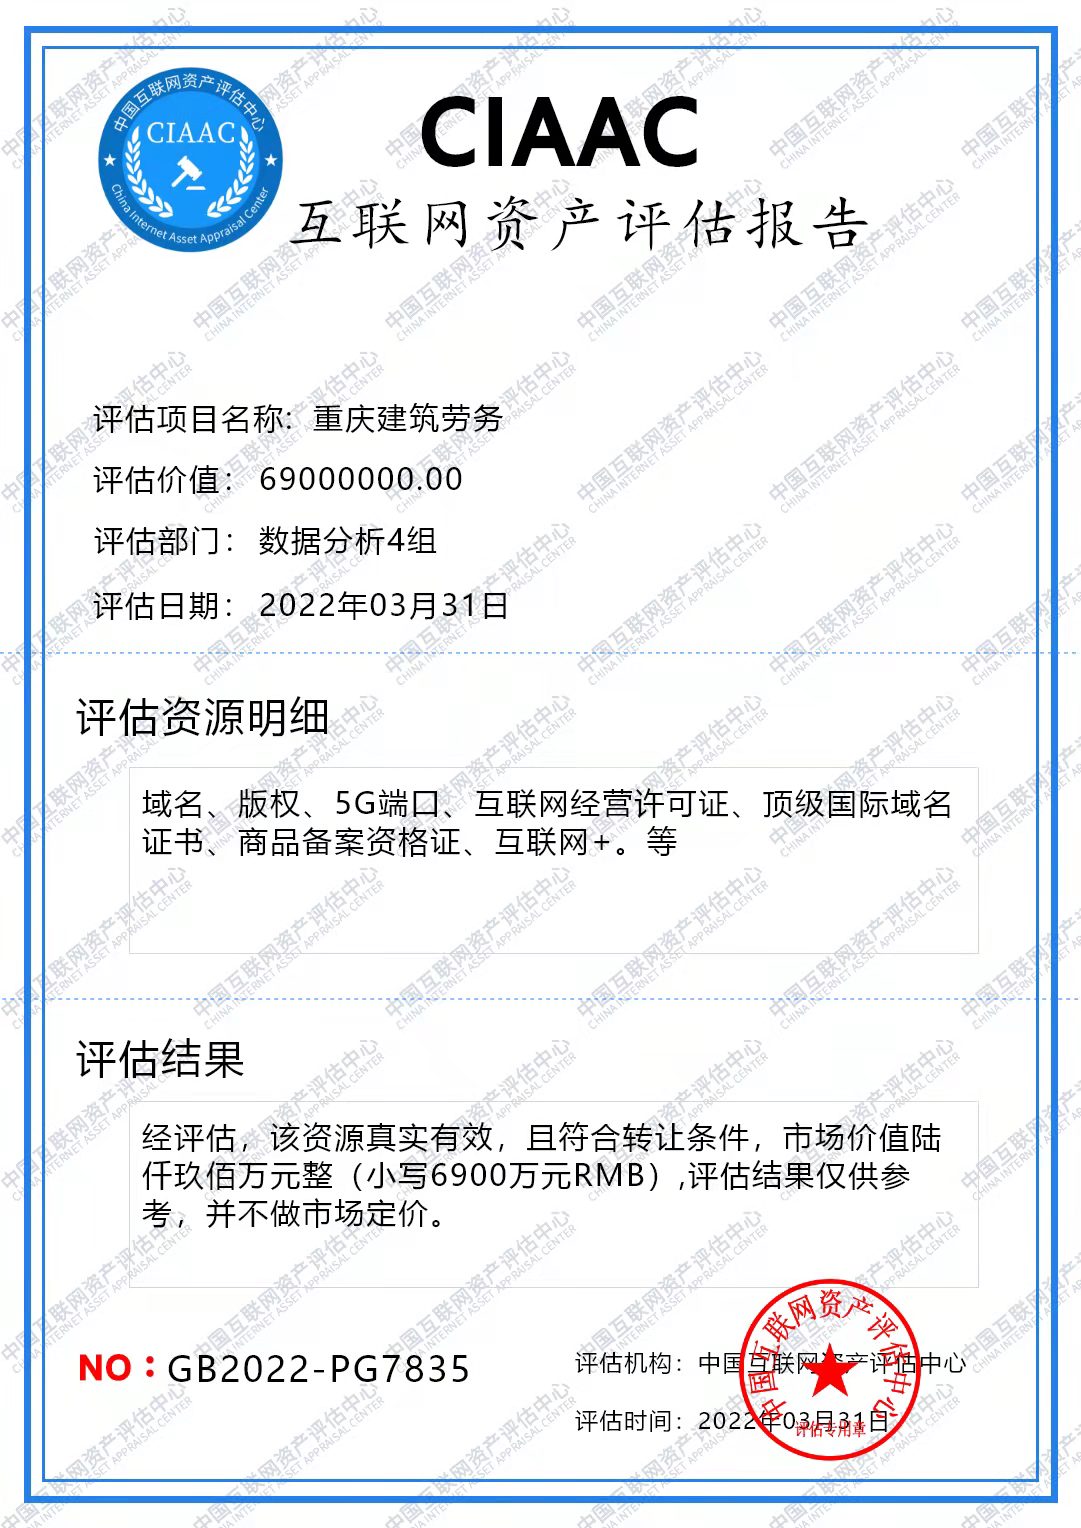 营销时代 推广就现在 重庆建筑劳务通过ChatGPT中国方正助力中小企业经济复苏